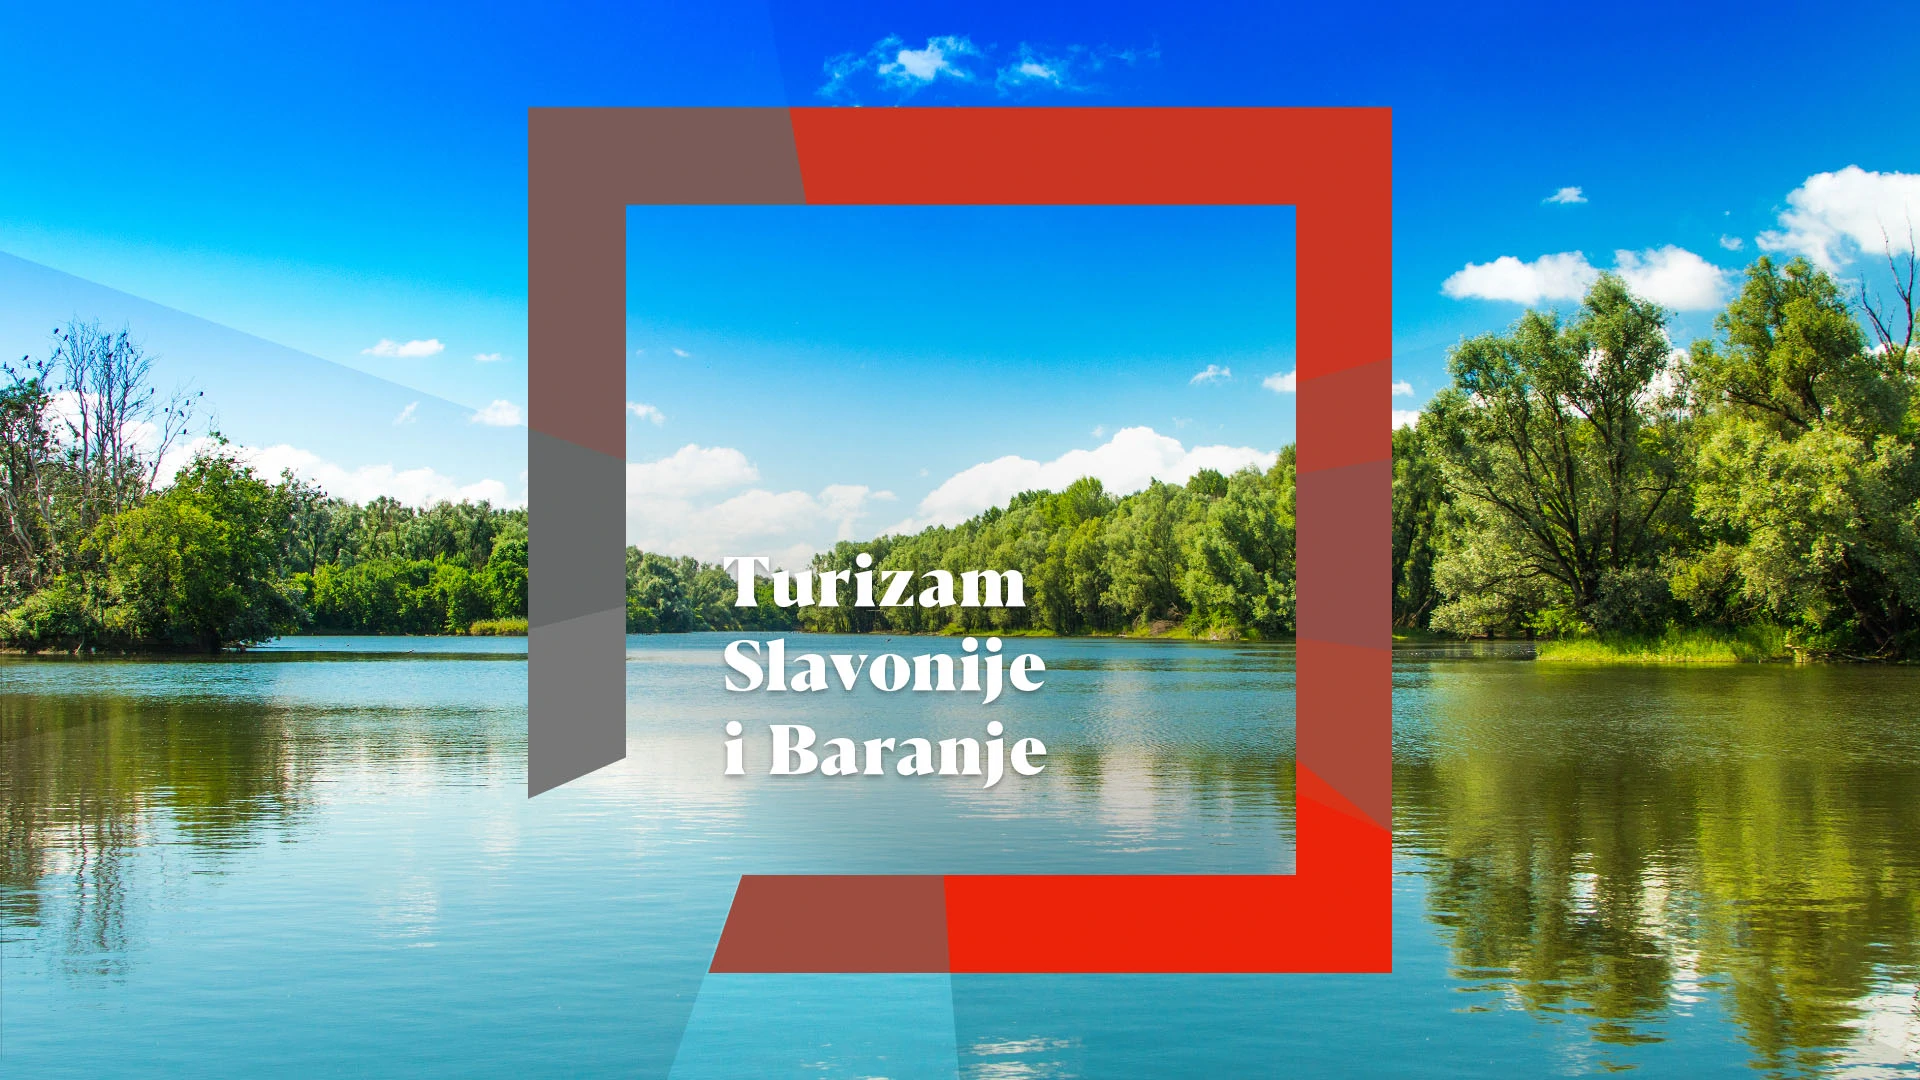 Turizam Slavonije i Baranje